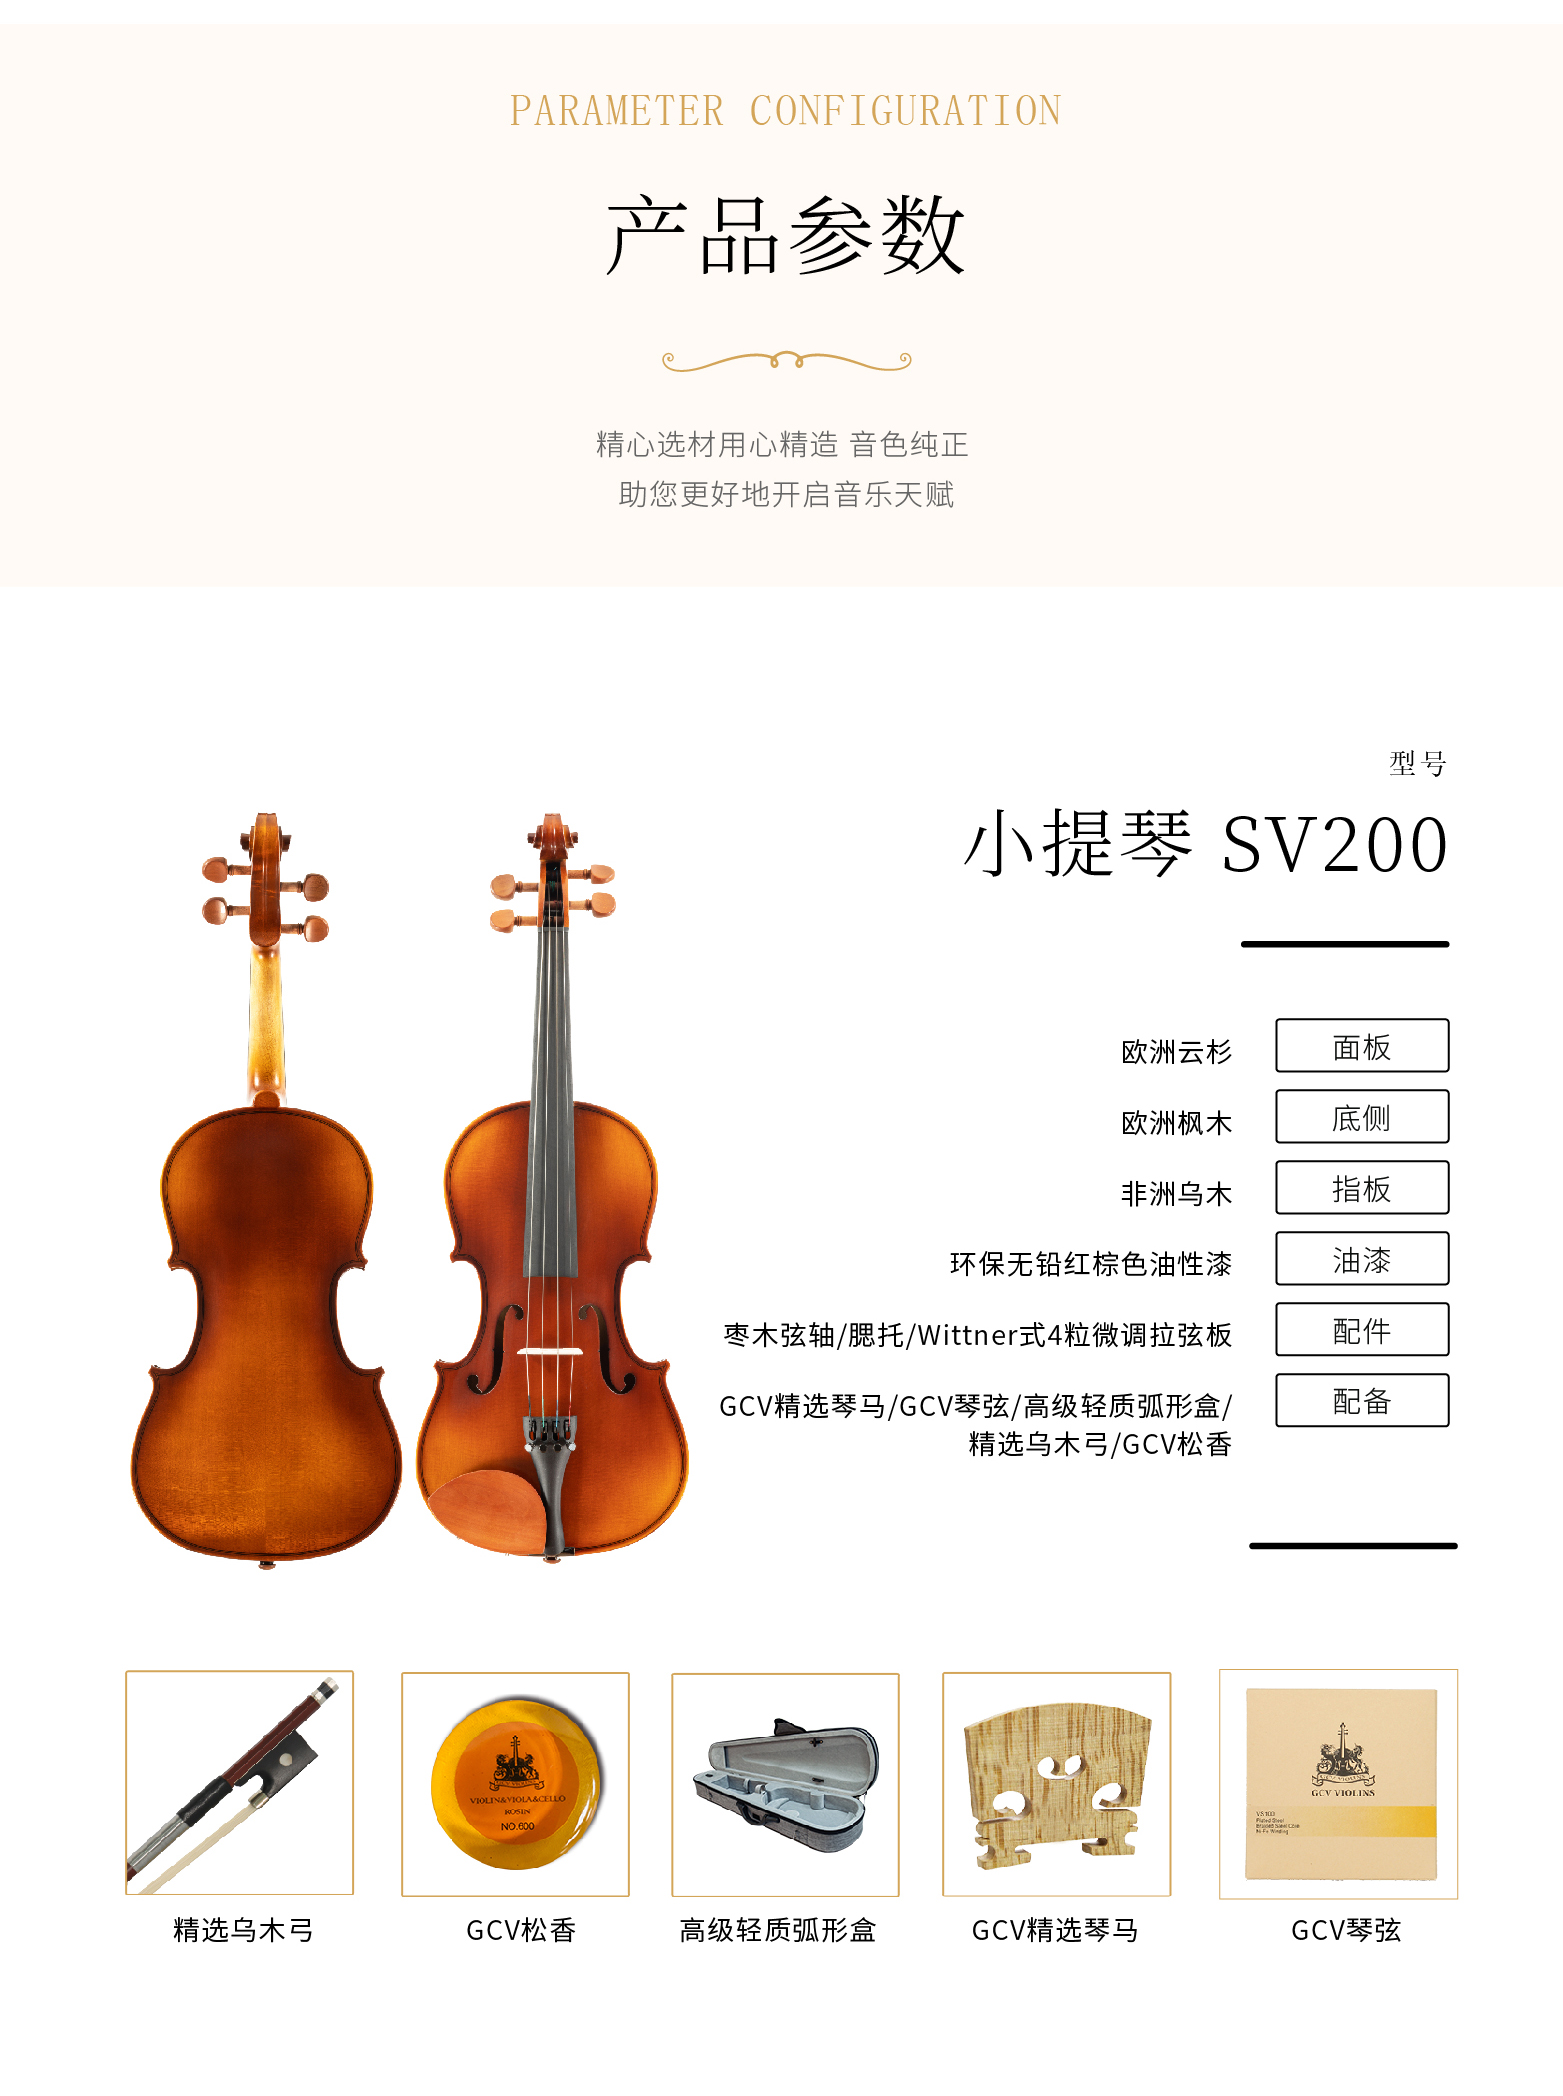 熙珑乐器专营店-详情-v1-2_SV200小提琴_PC-副本-2_03.jpg